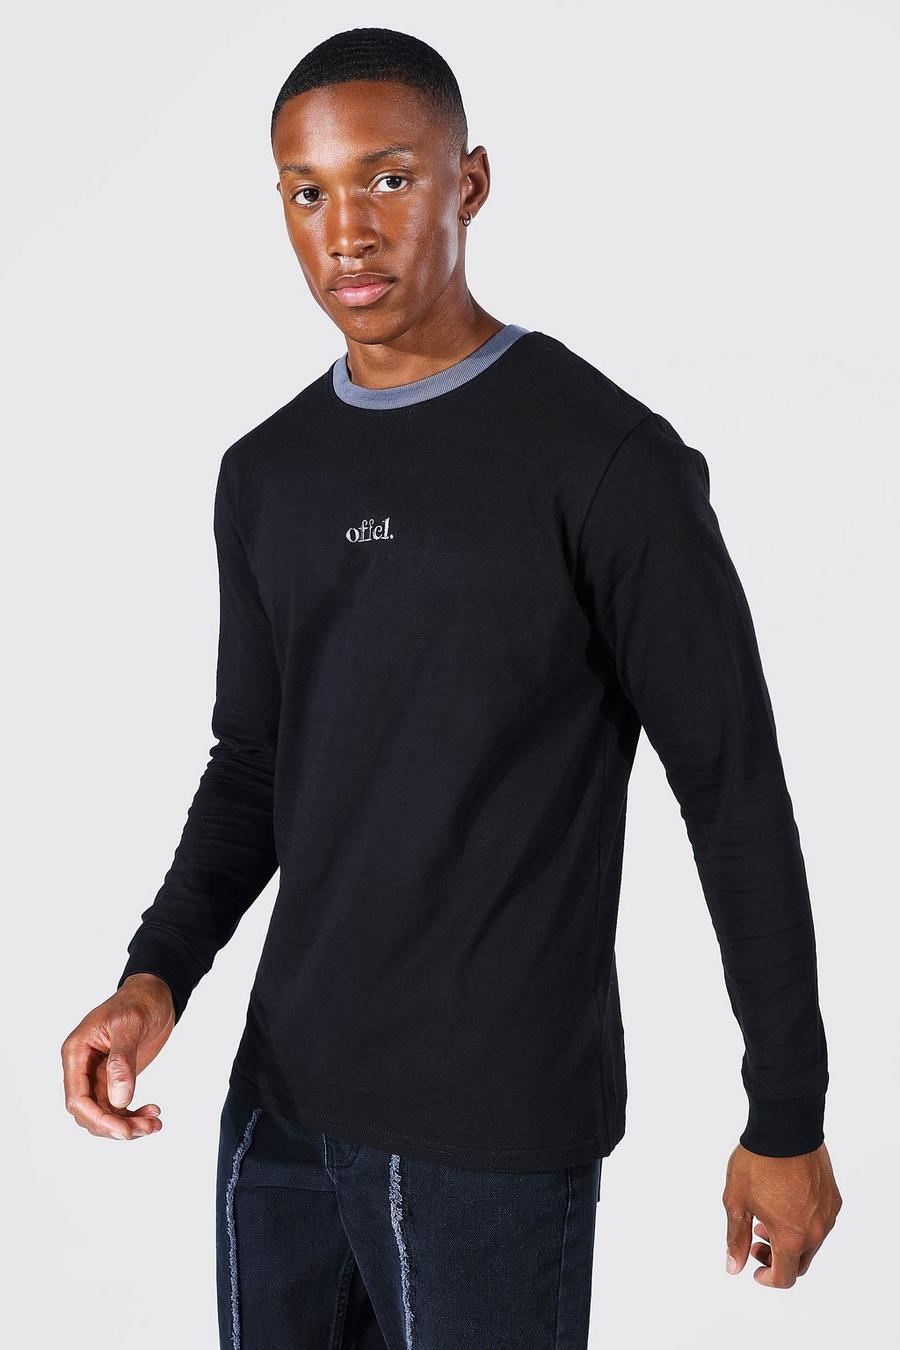 Black Slim Fit Offcl Long Sleeve Ringer T-shirt image number 1